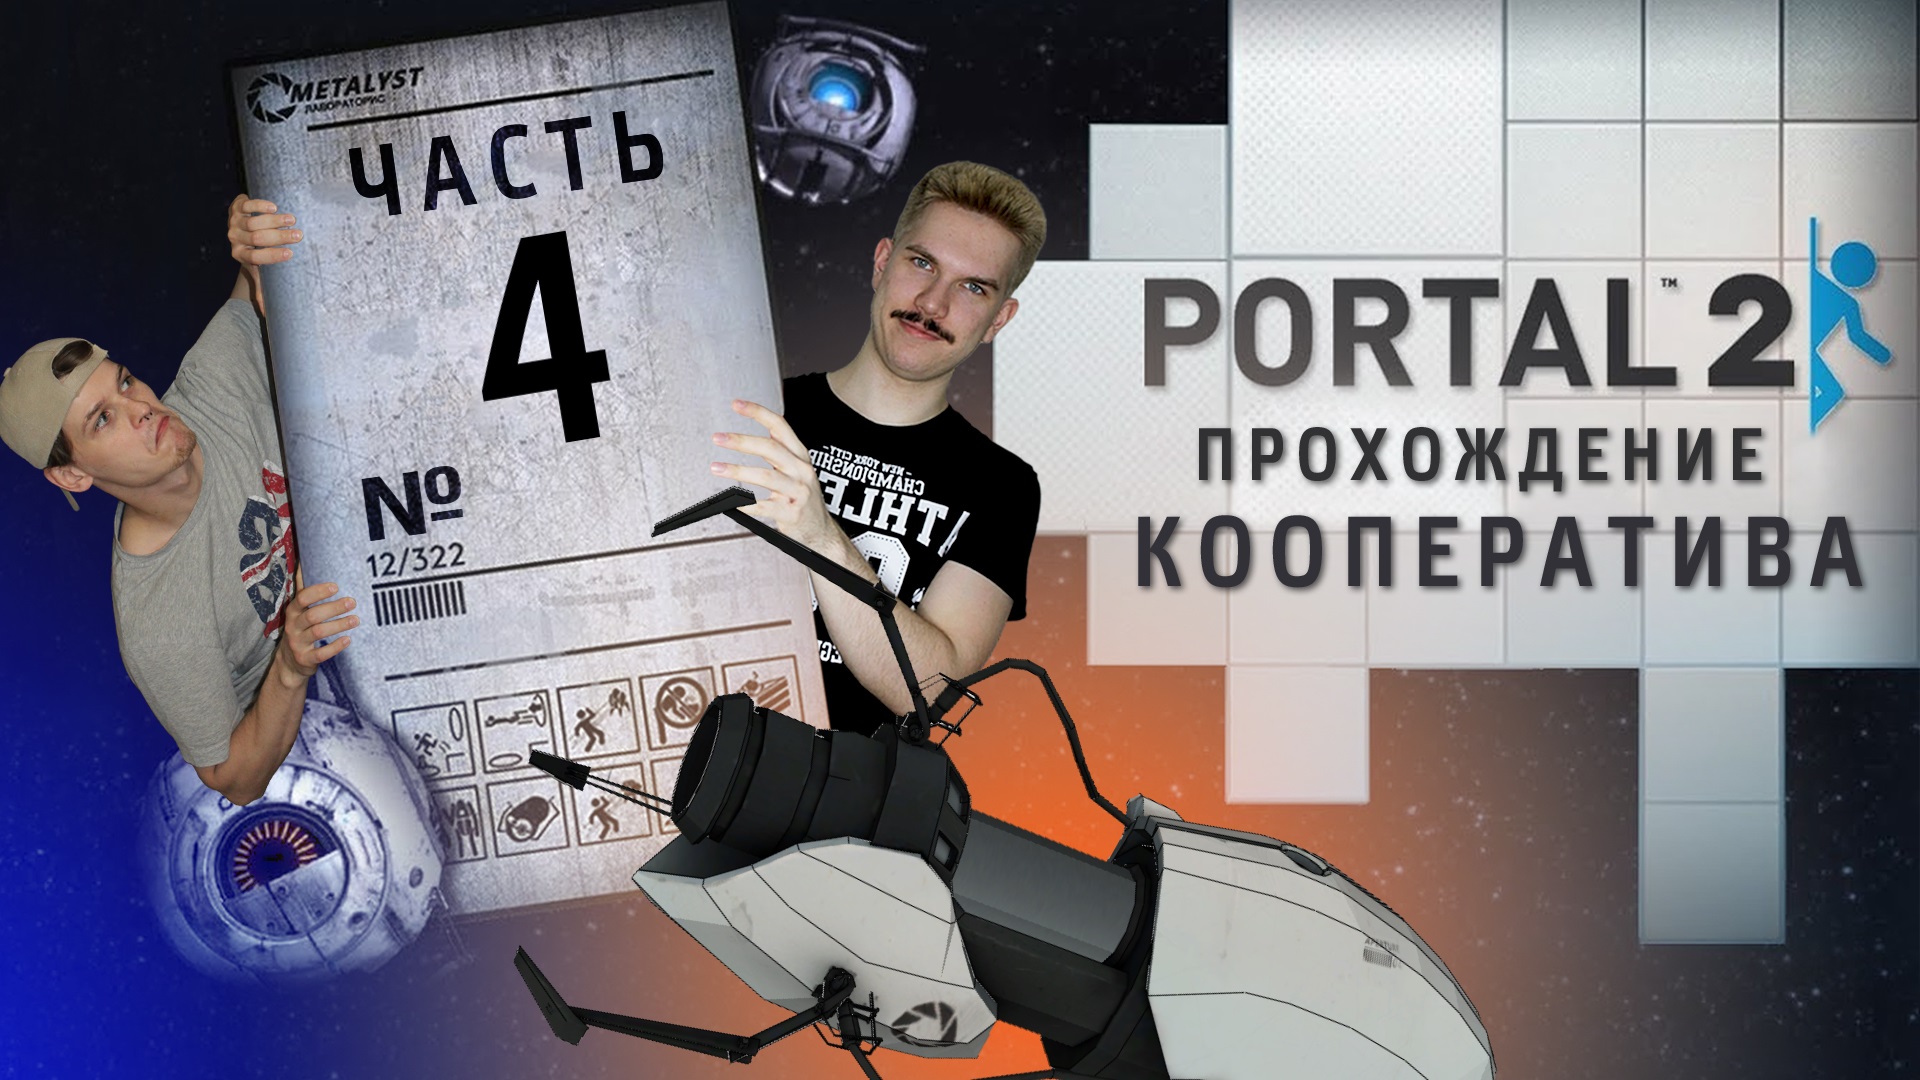 Portal 2 кооператив как пройти фото 30